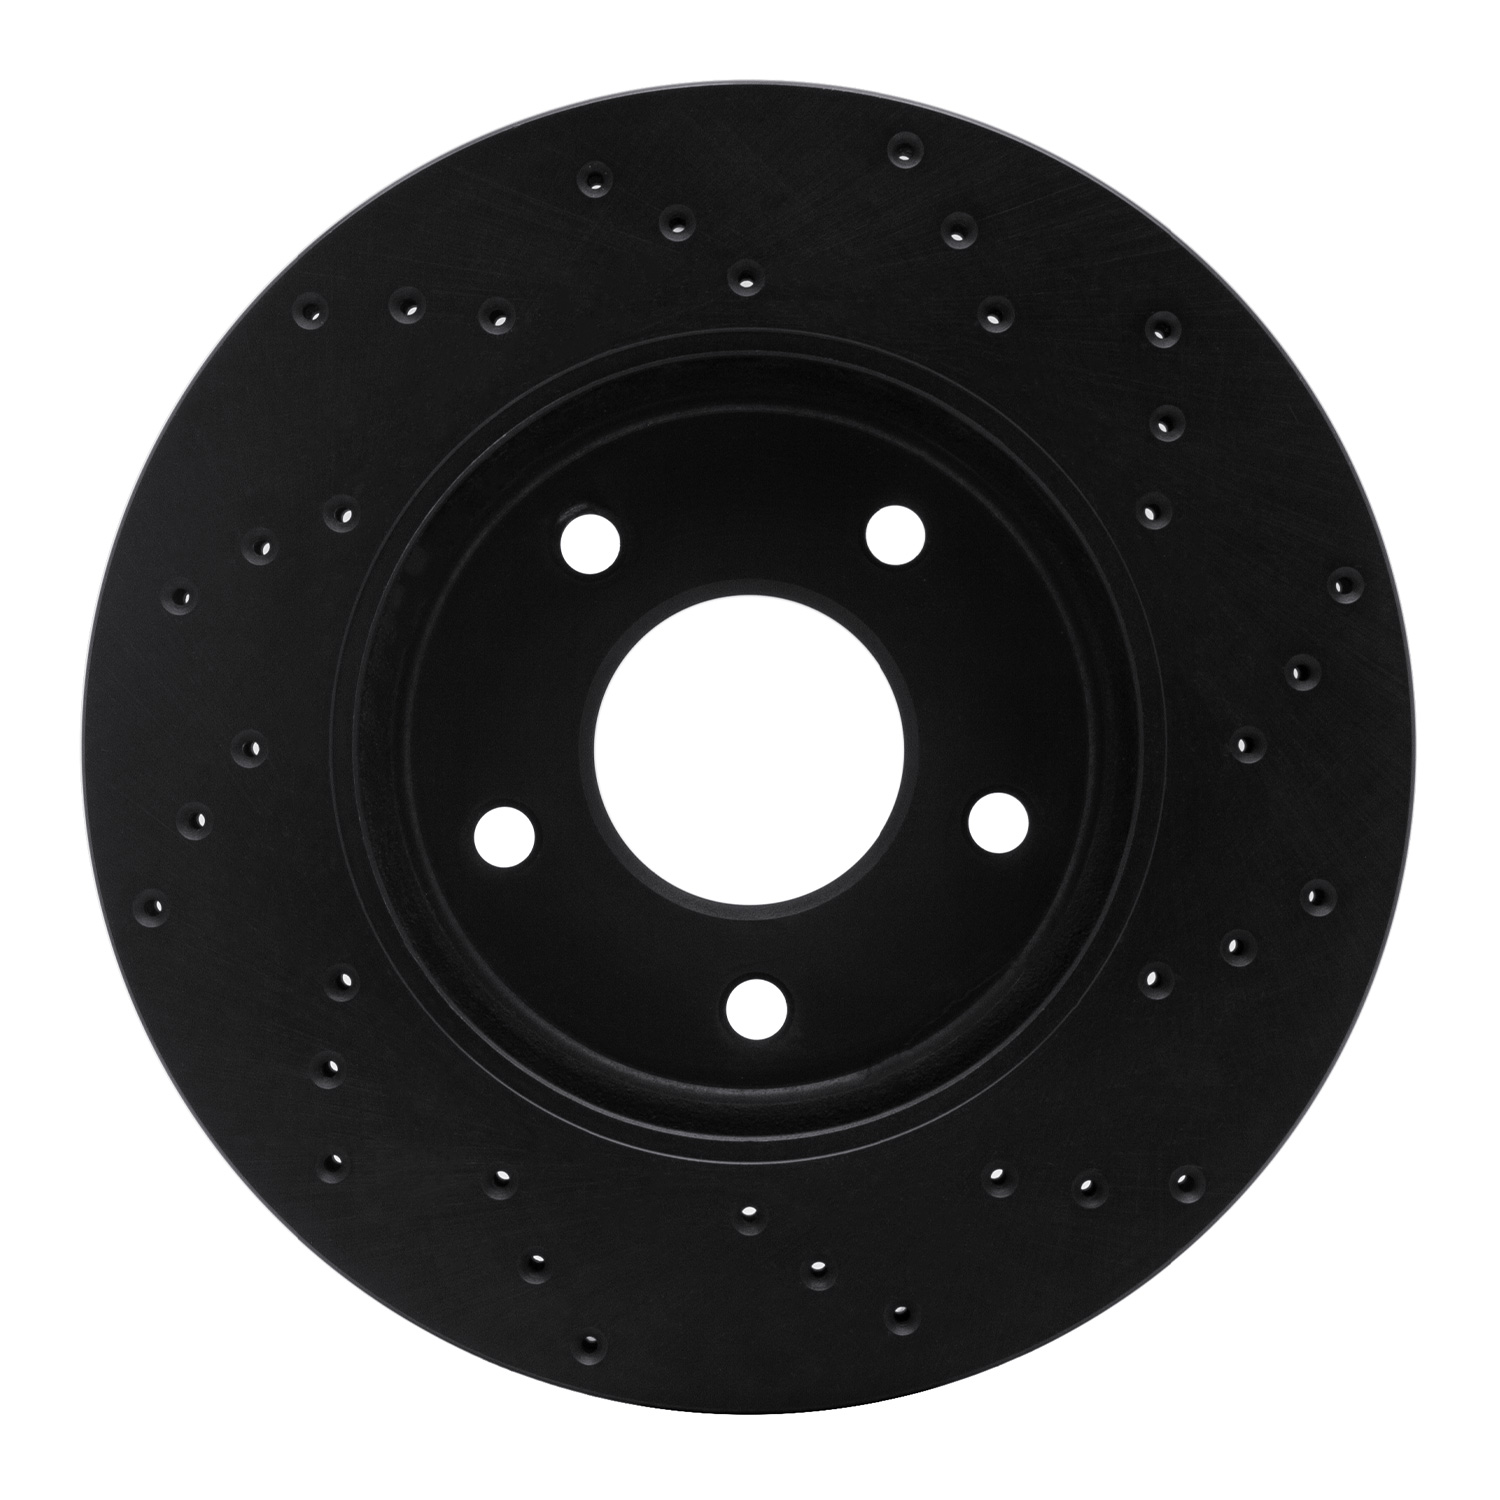 Drilled Brake Rotor [Black], Fits Select Multiple Makes/Models